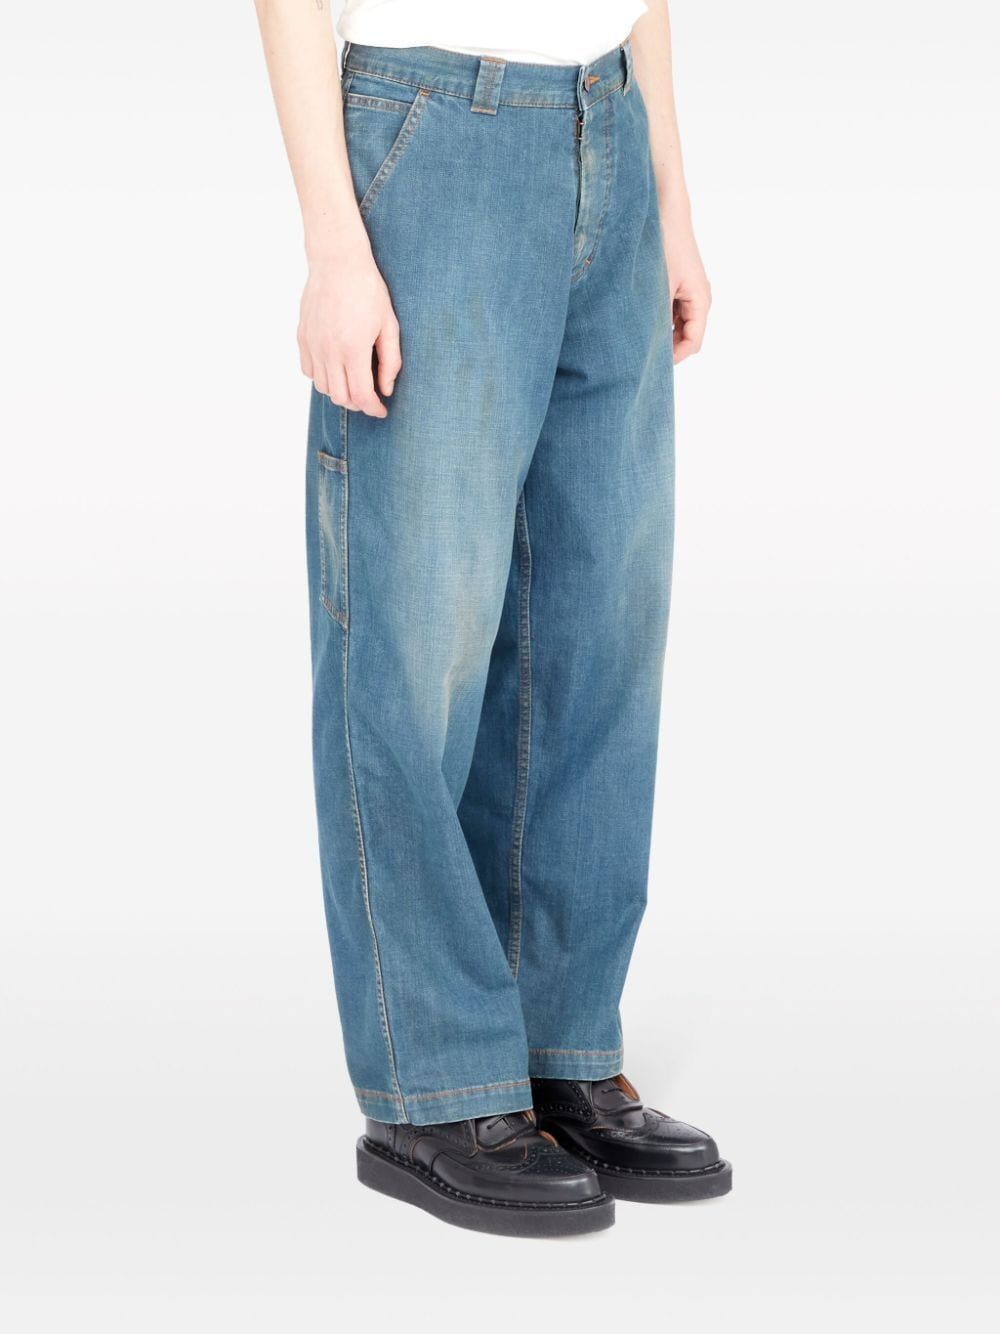 男士 SS24 系列藍色純棉牛仔褲